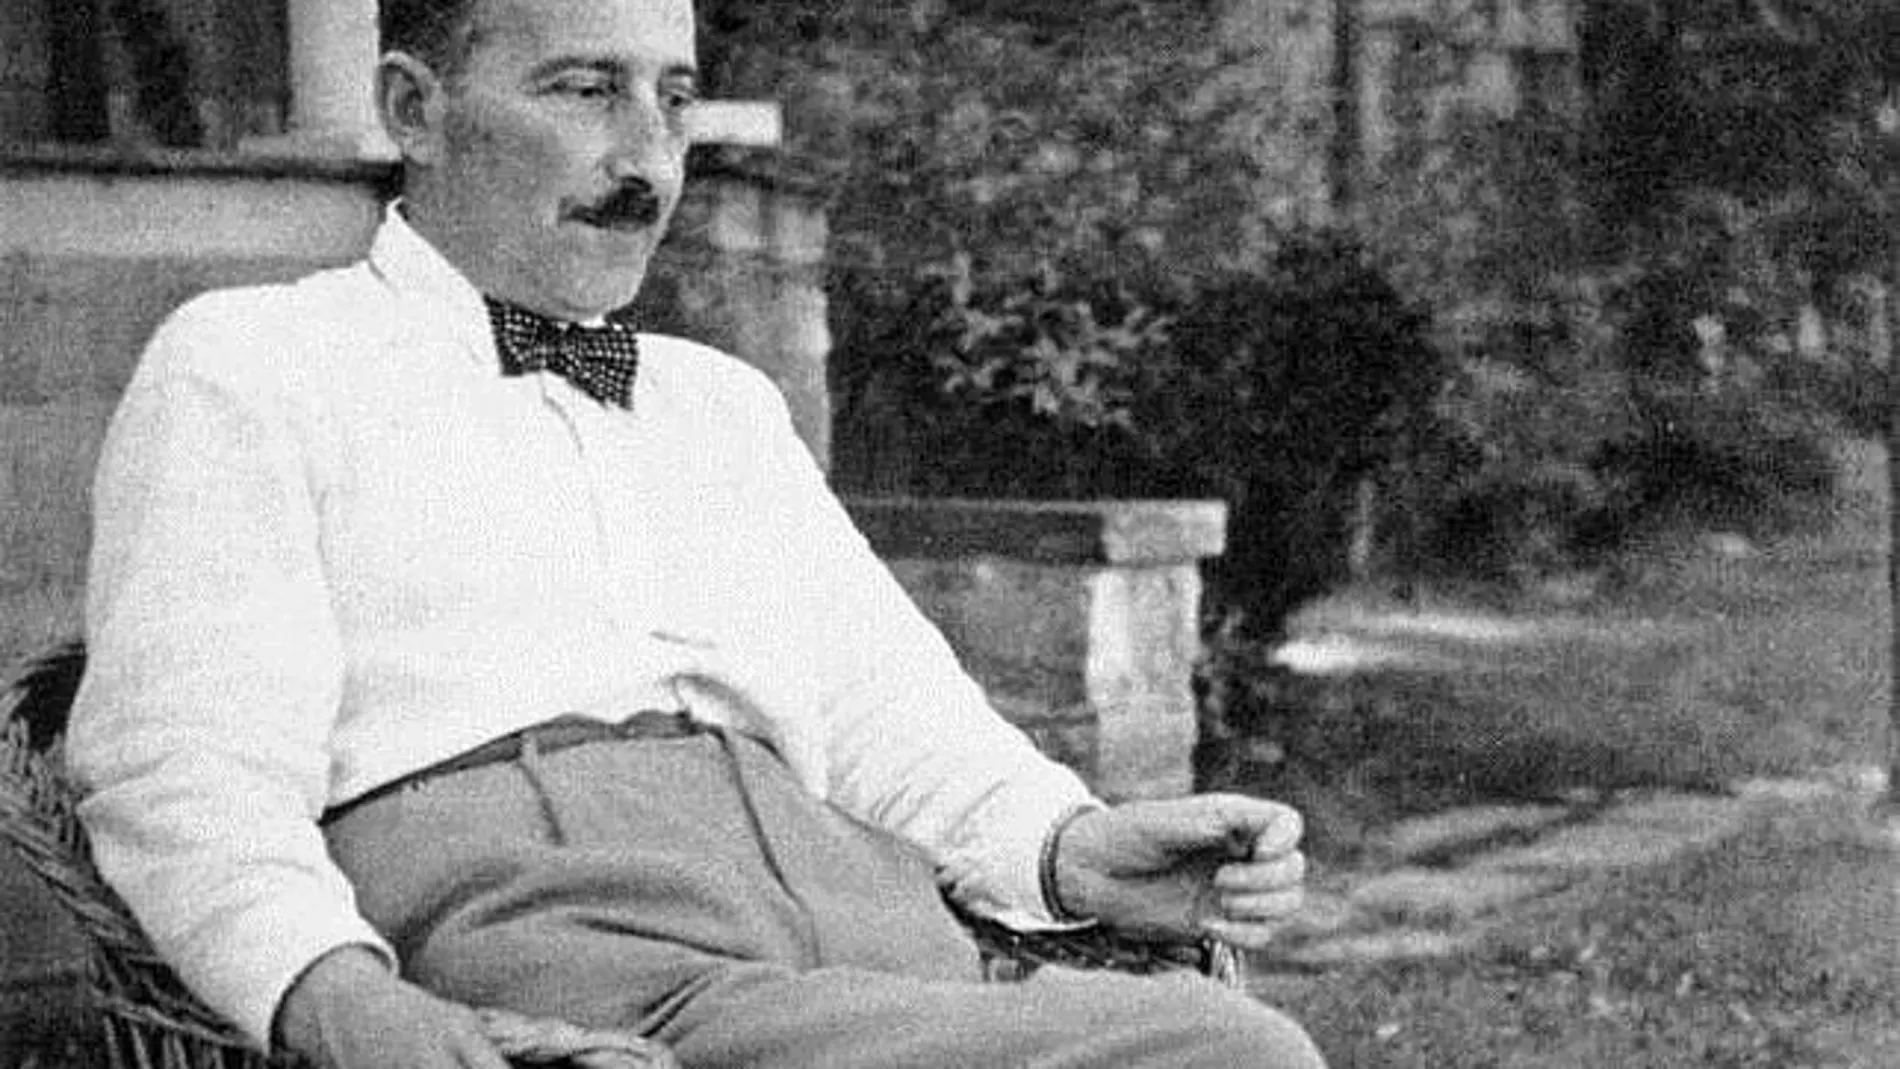 Zweig fue un cronista de la cultura y los totalitarismos de su tiempo